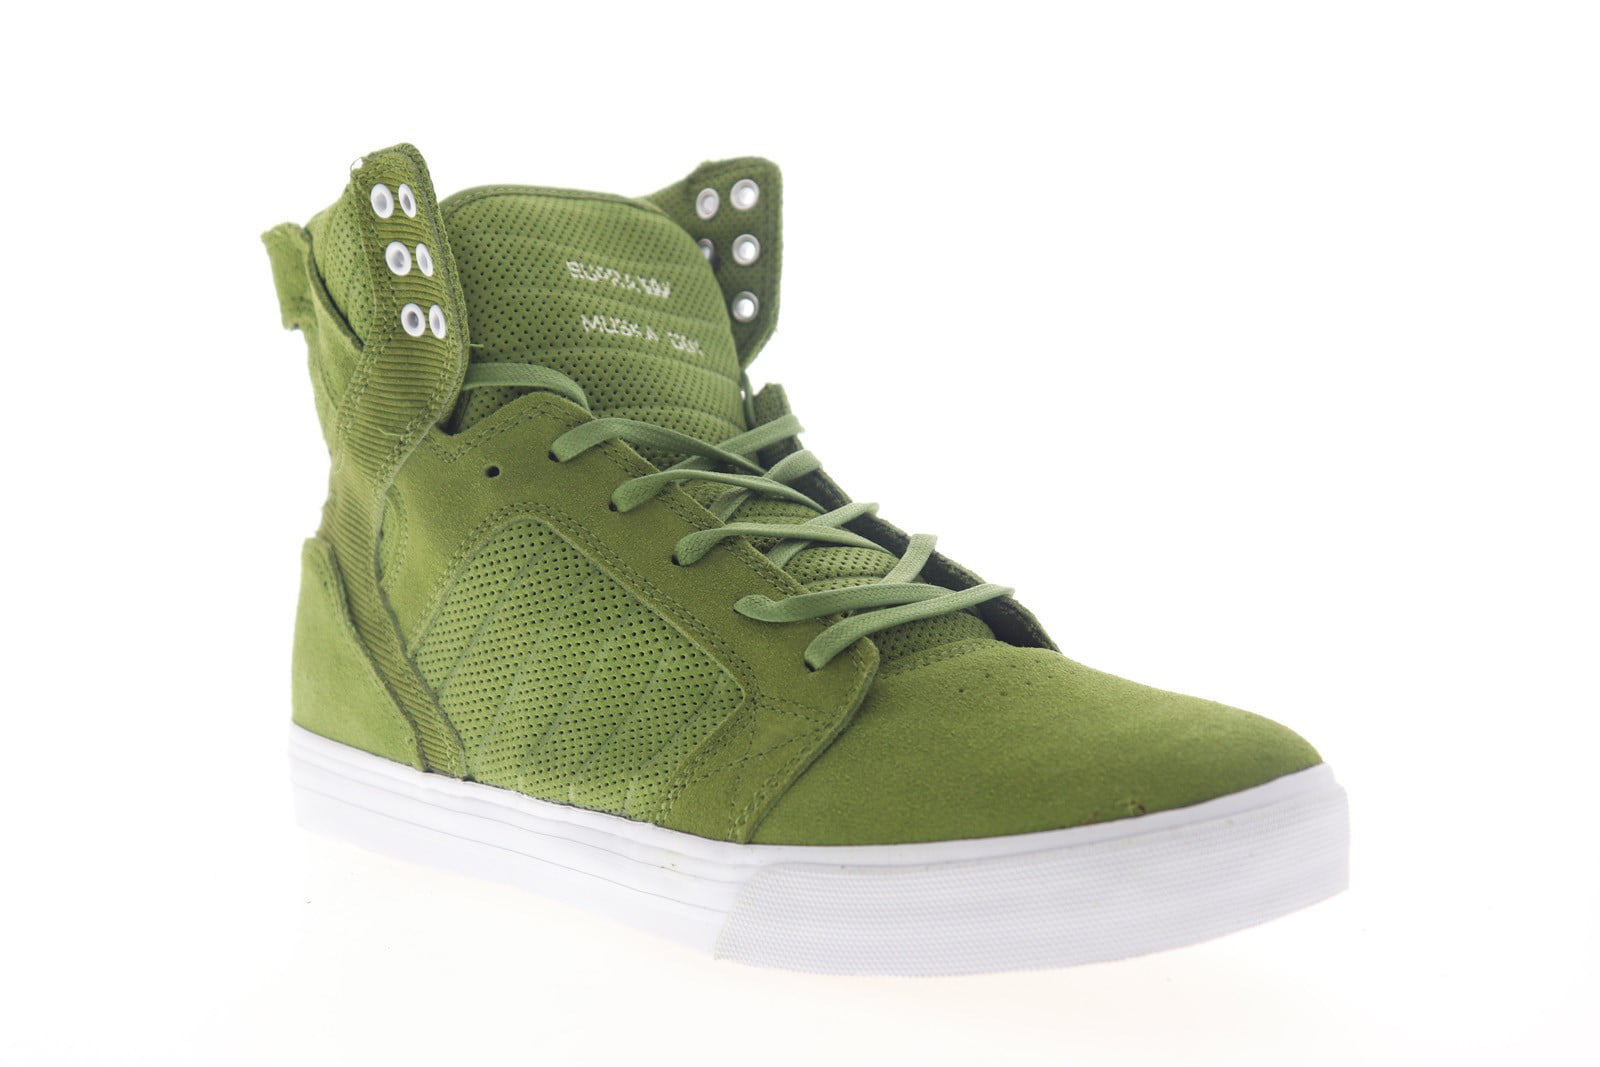 Museum Vaarwel Dwaal Supra Skytop Mens Green Suede Lace Up High Top Sneakers Shoes - Walmart.com